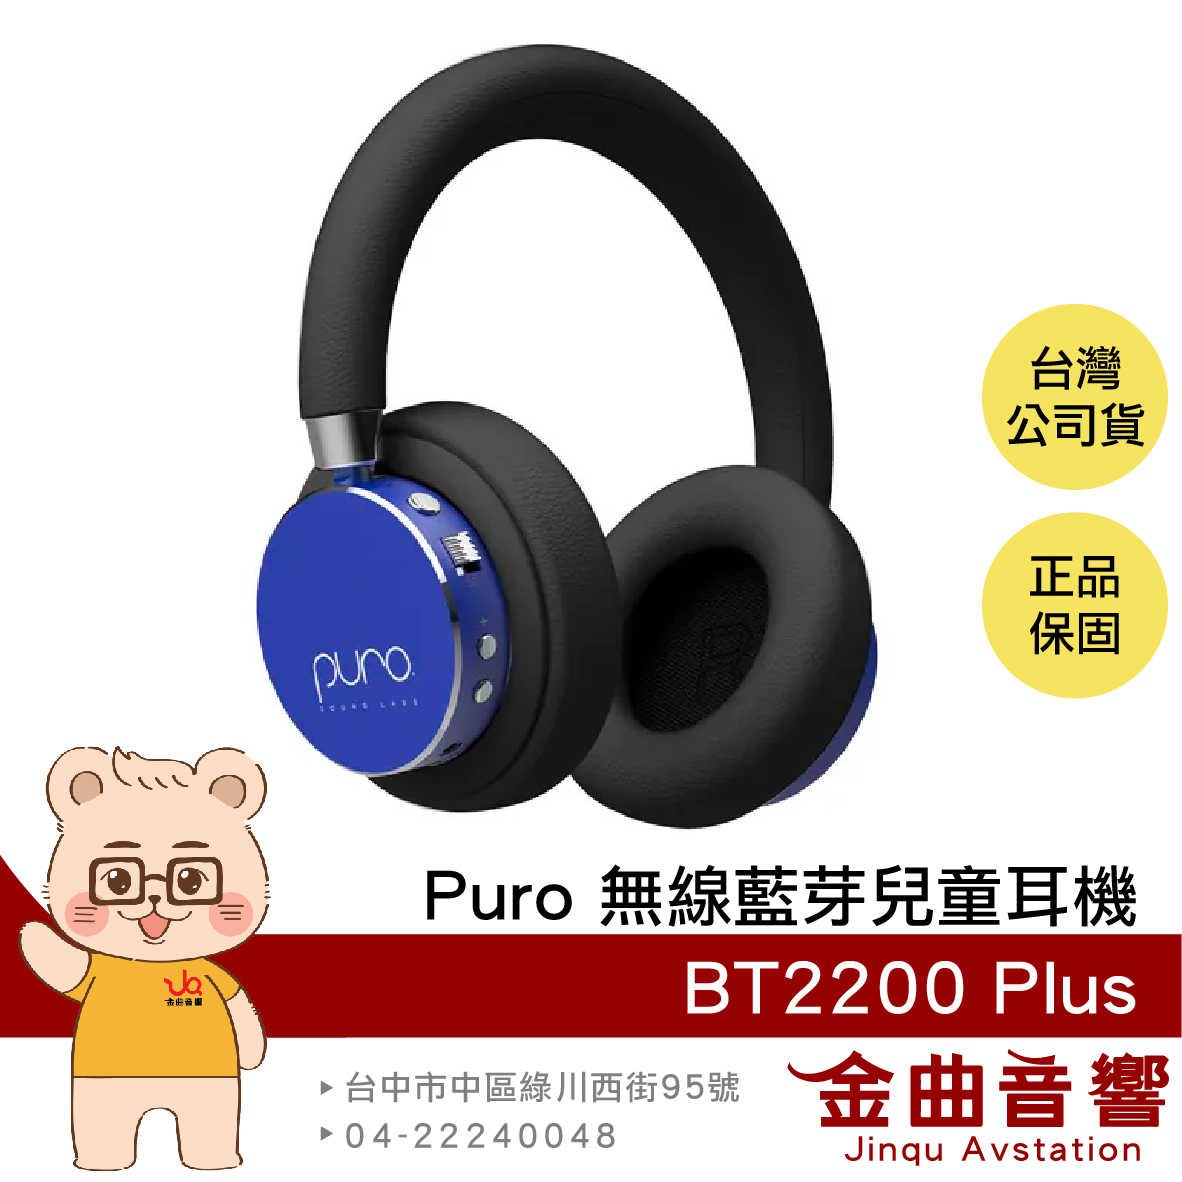 Puro BT2200 Plus 藍色 安全音量 音樂分享 可替換耳罩 耳罩式 無線 藍牙 兒童耳機 | 金曲音響